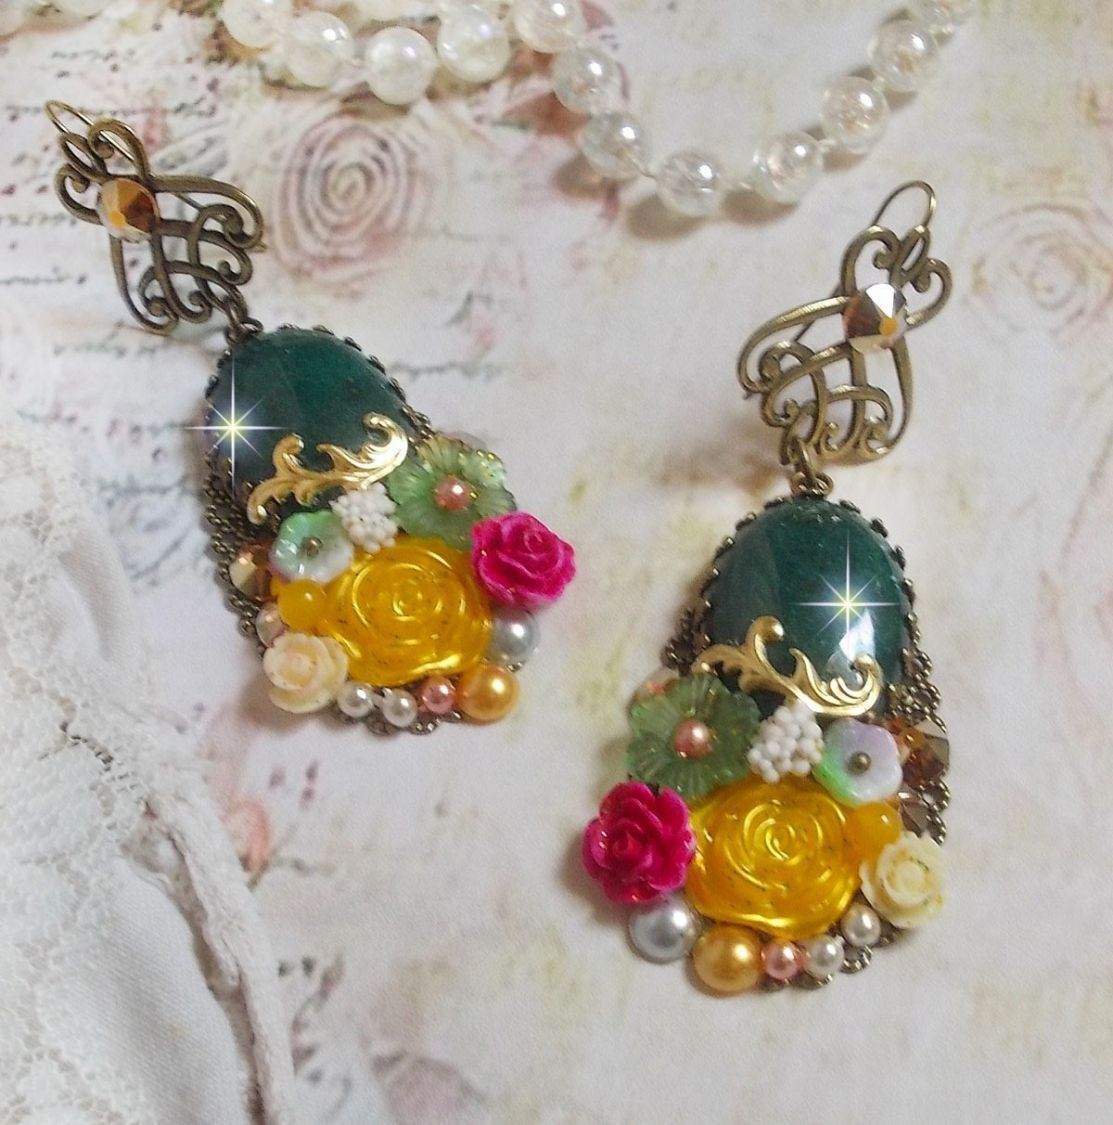 BO Jade Flowers créées avec des cabochons ovales en Jade de Malaisie, des cristaux de Swarovski, perles en résine, des fleurs en verre avec des accessoires de qualité 